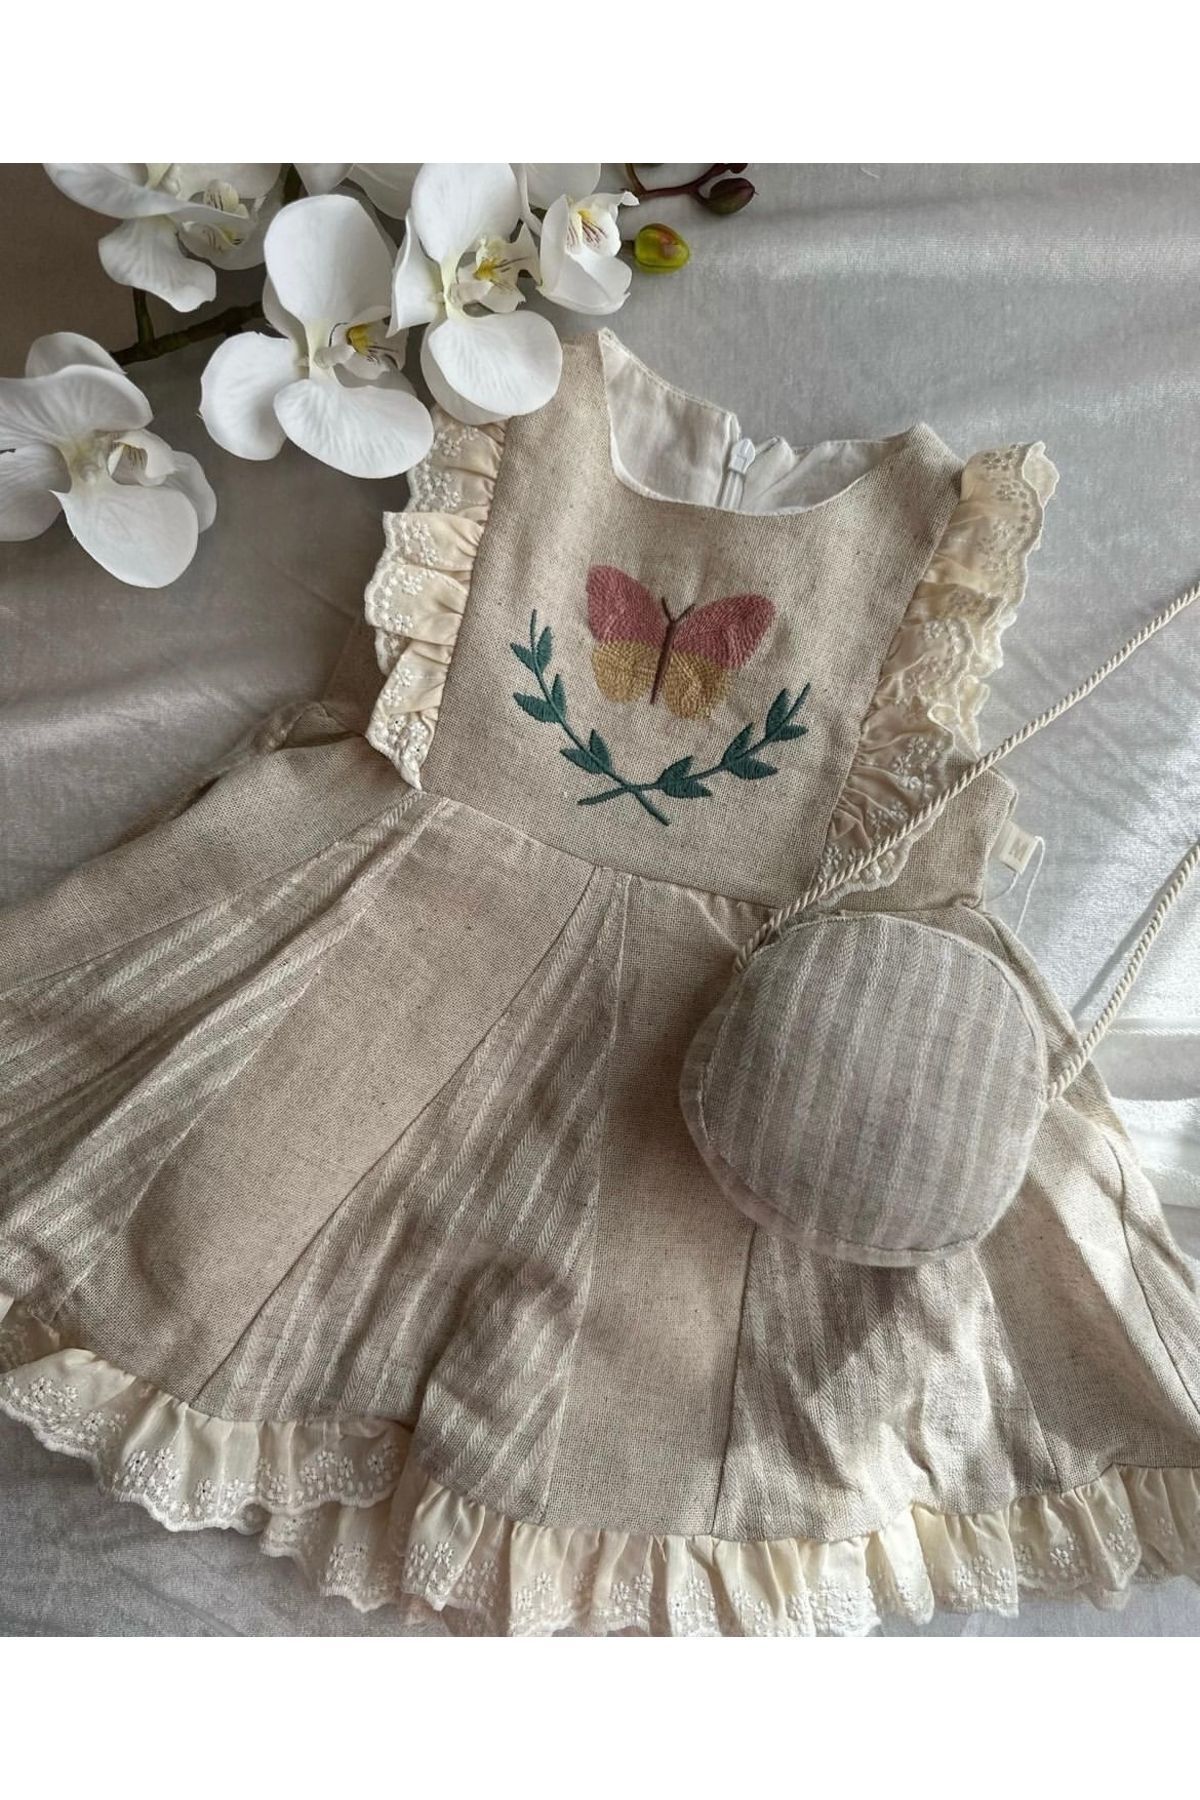 Mymio Keten kumaş organik bayramlık çantalı kelebek desenli kız çocuk elbise